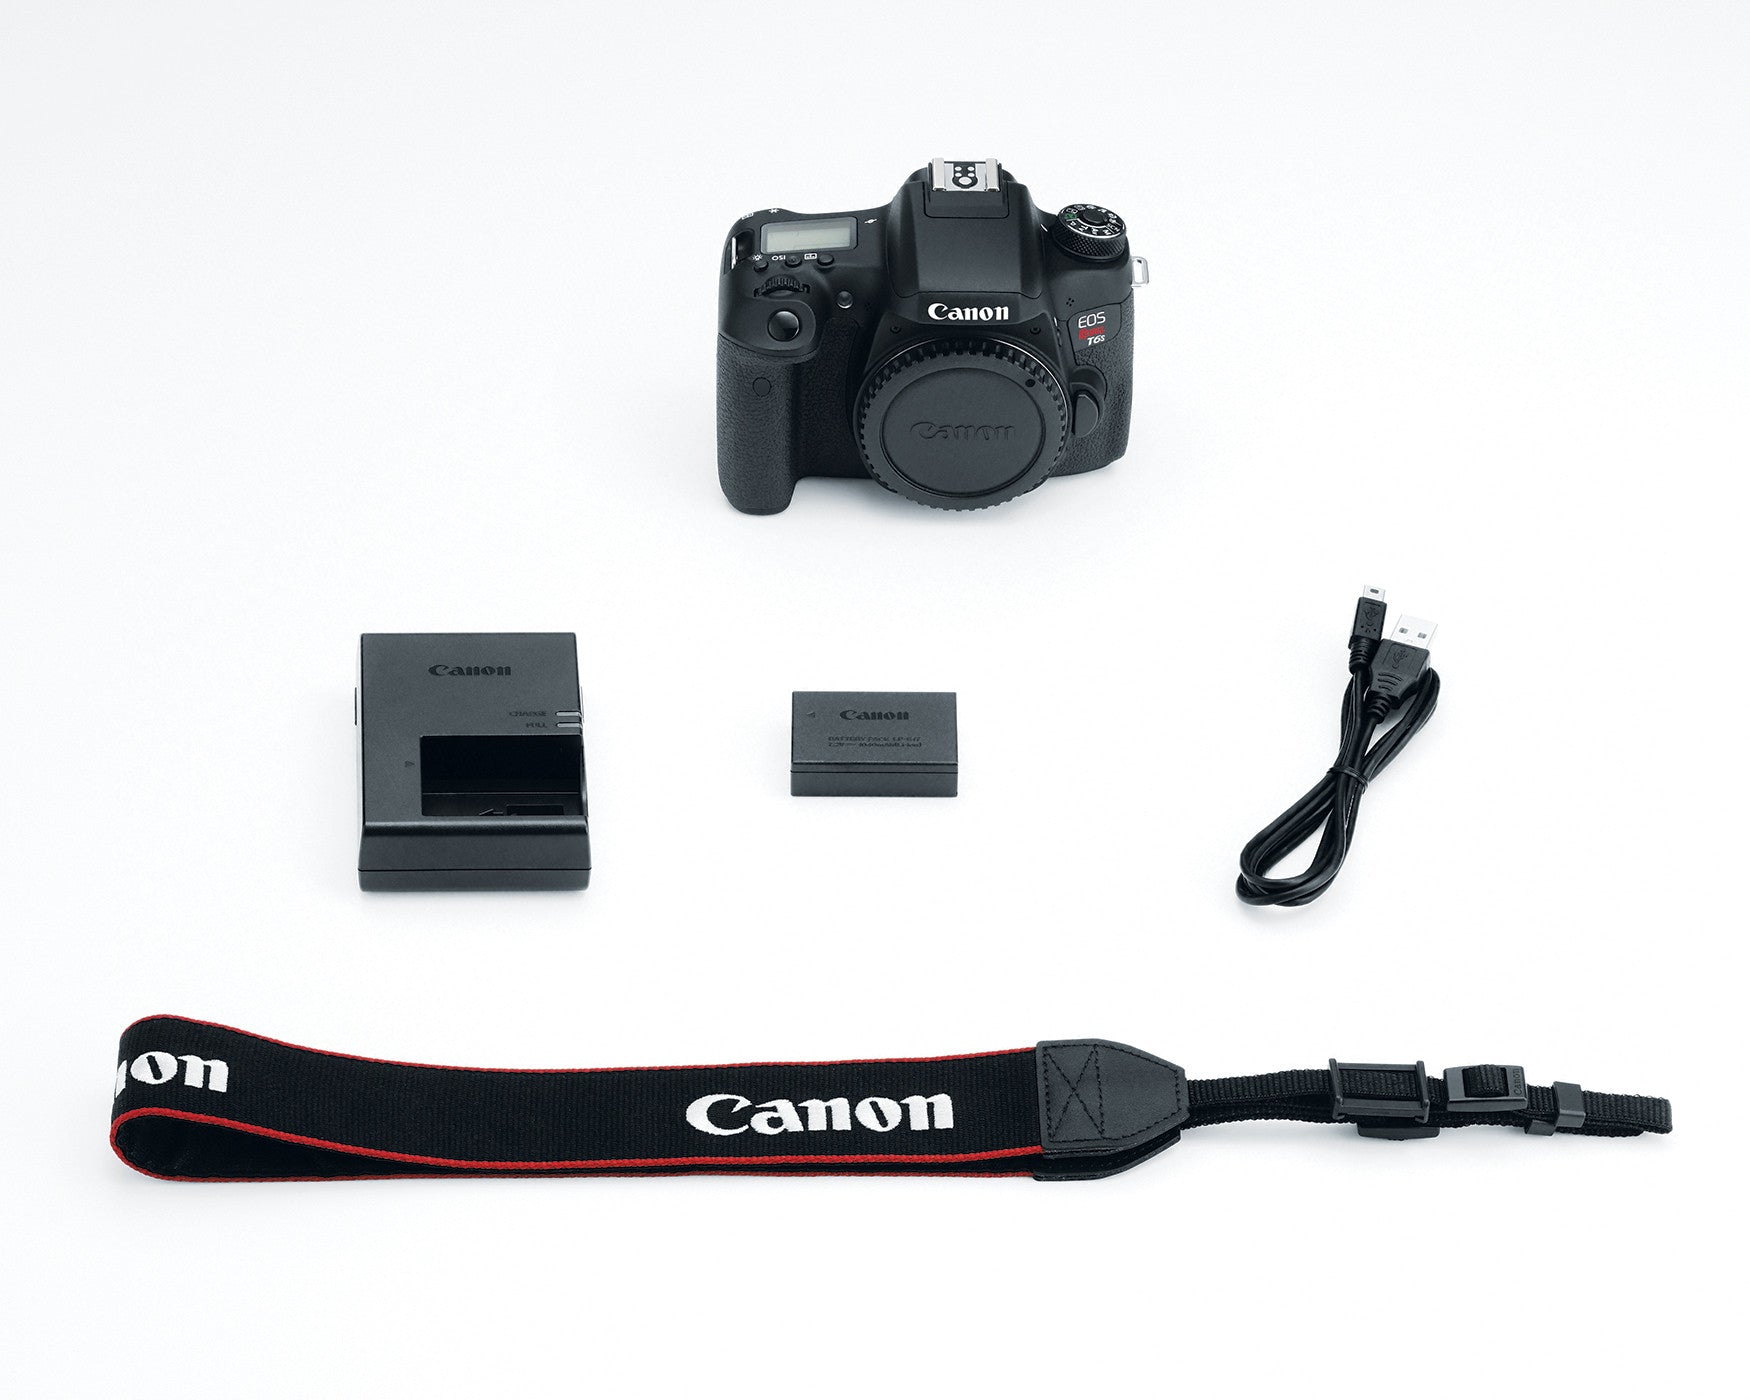 Canon EOS Rebel T6s Camera Body, camera dslr cameras, Canon - Pictureline  - 2